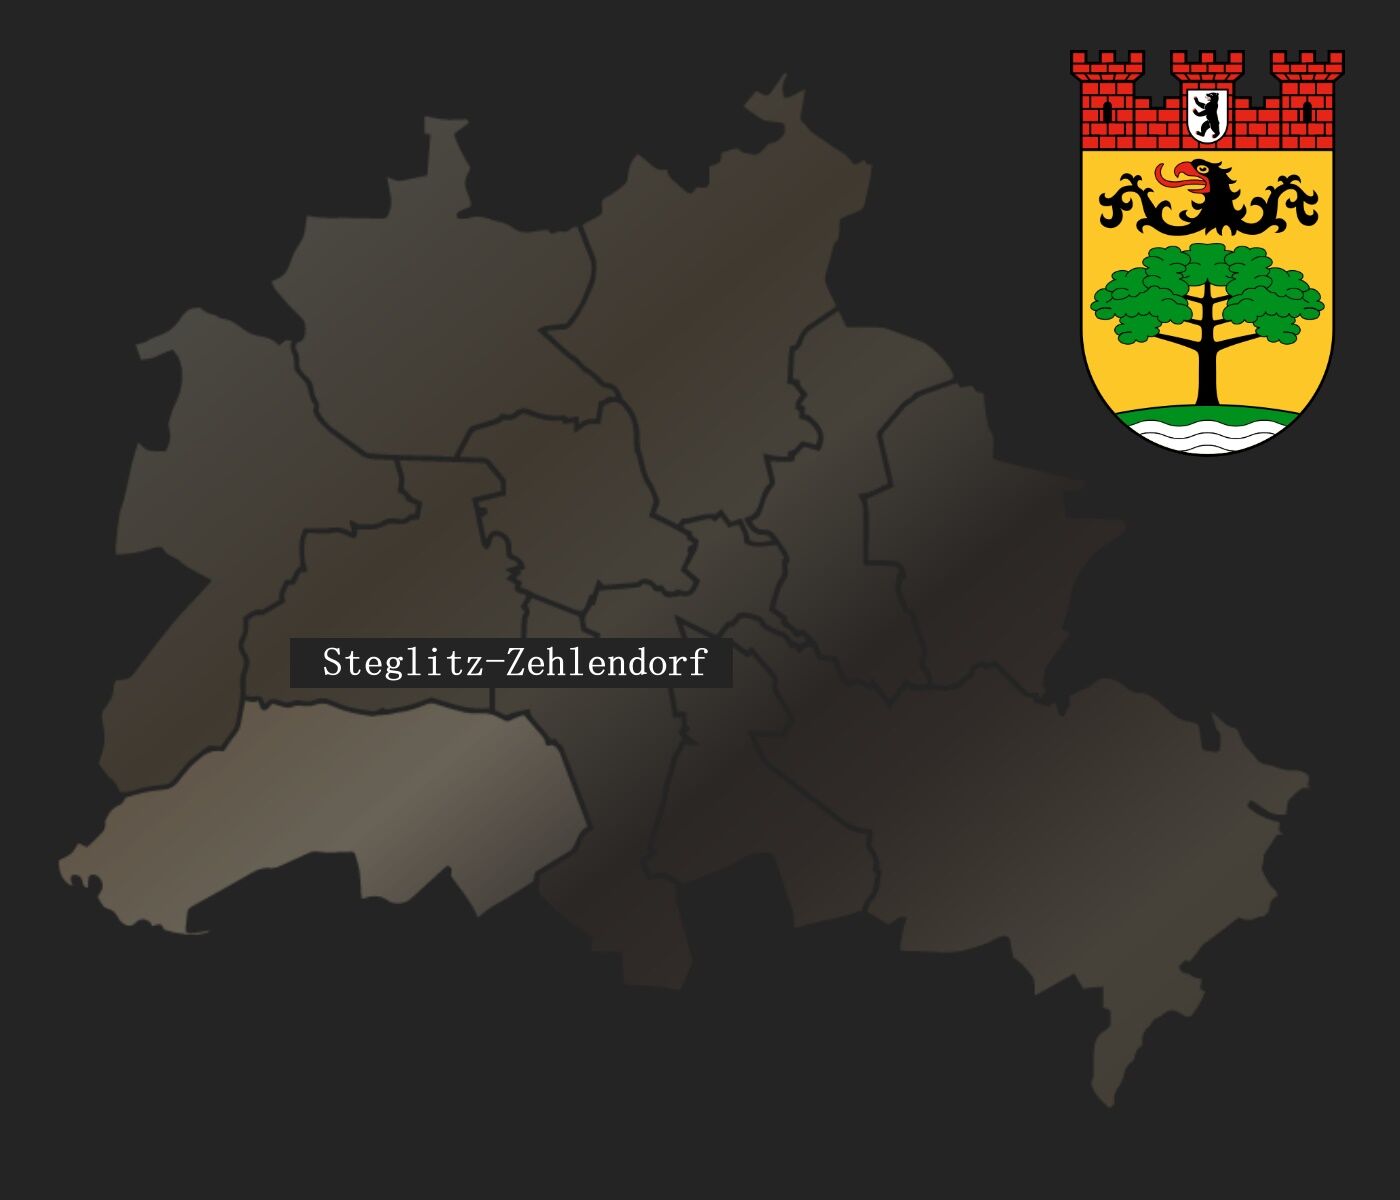 Logo vom Stadtbezirk Berlin-Steglitz-Zehlendorf